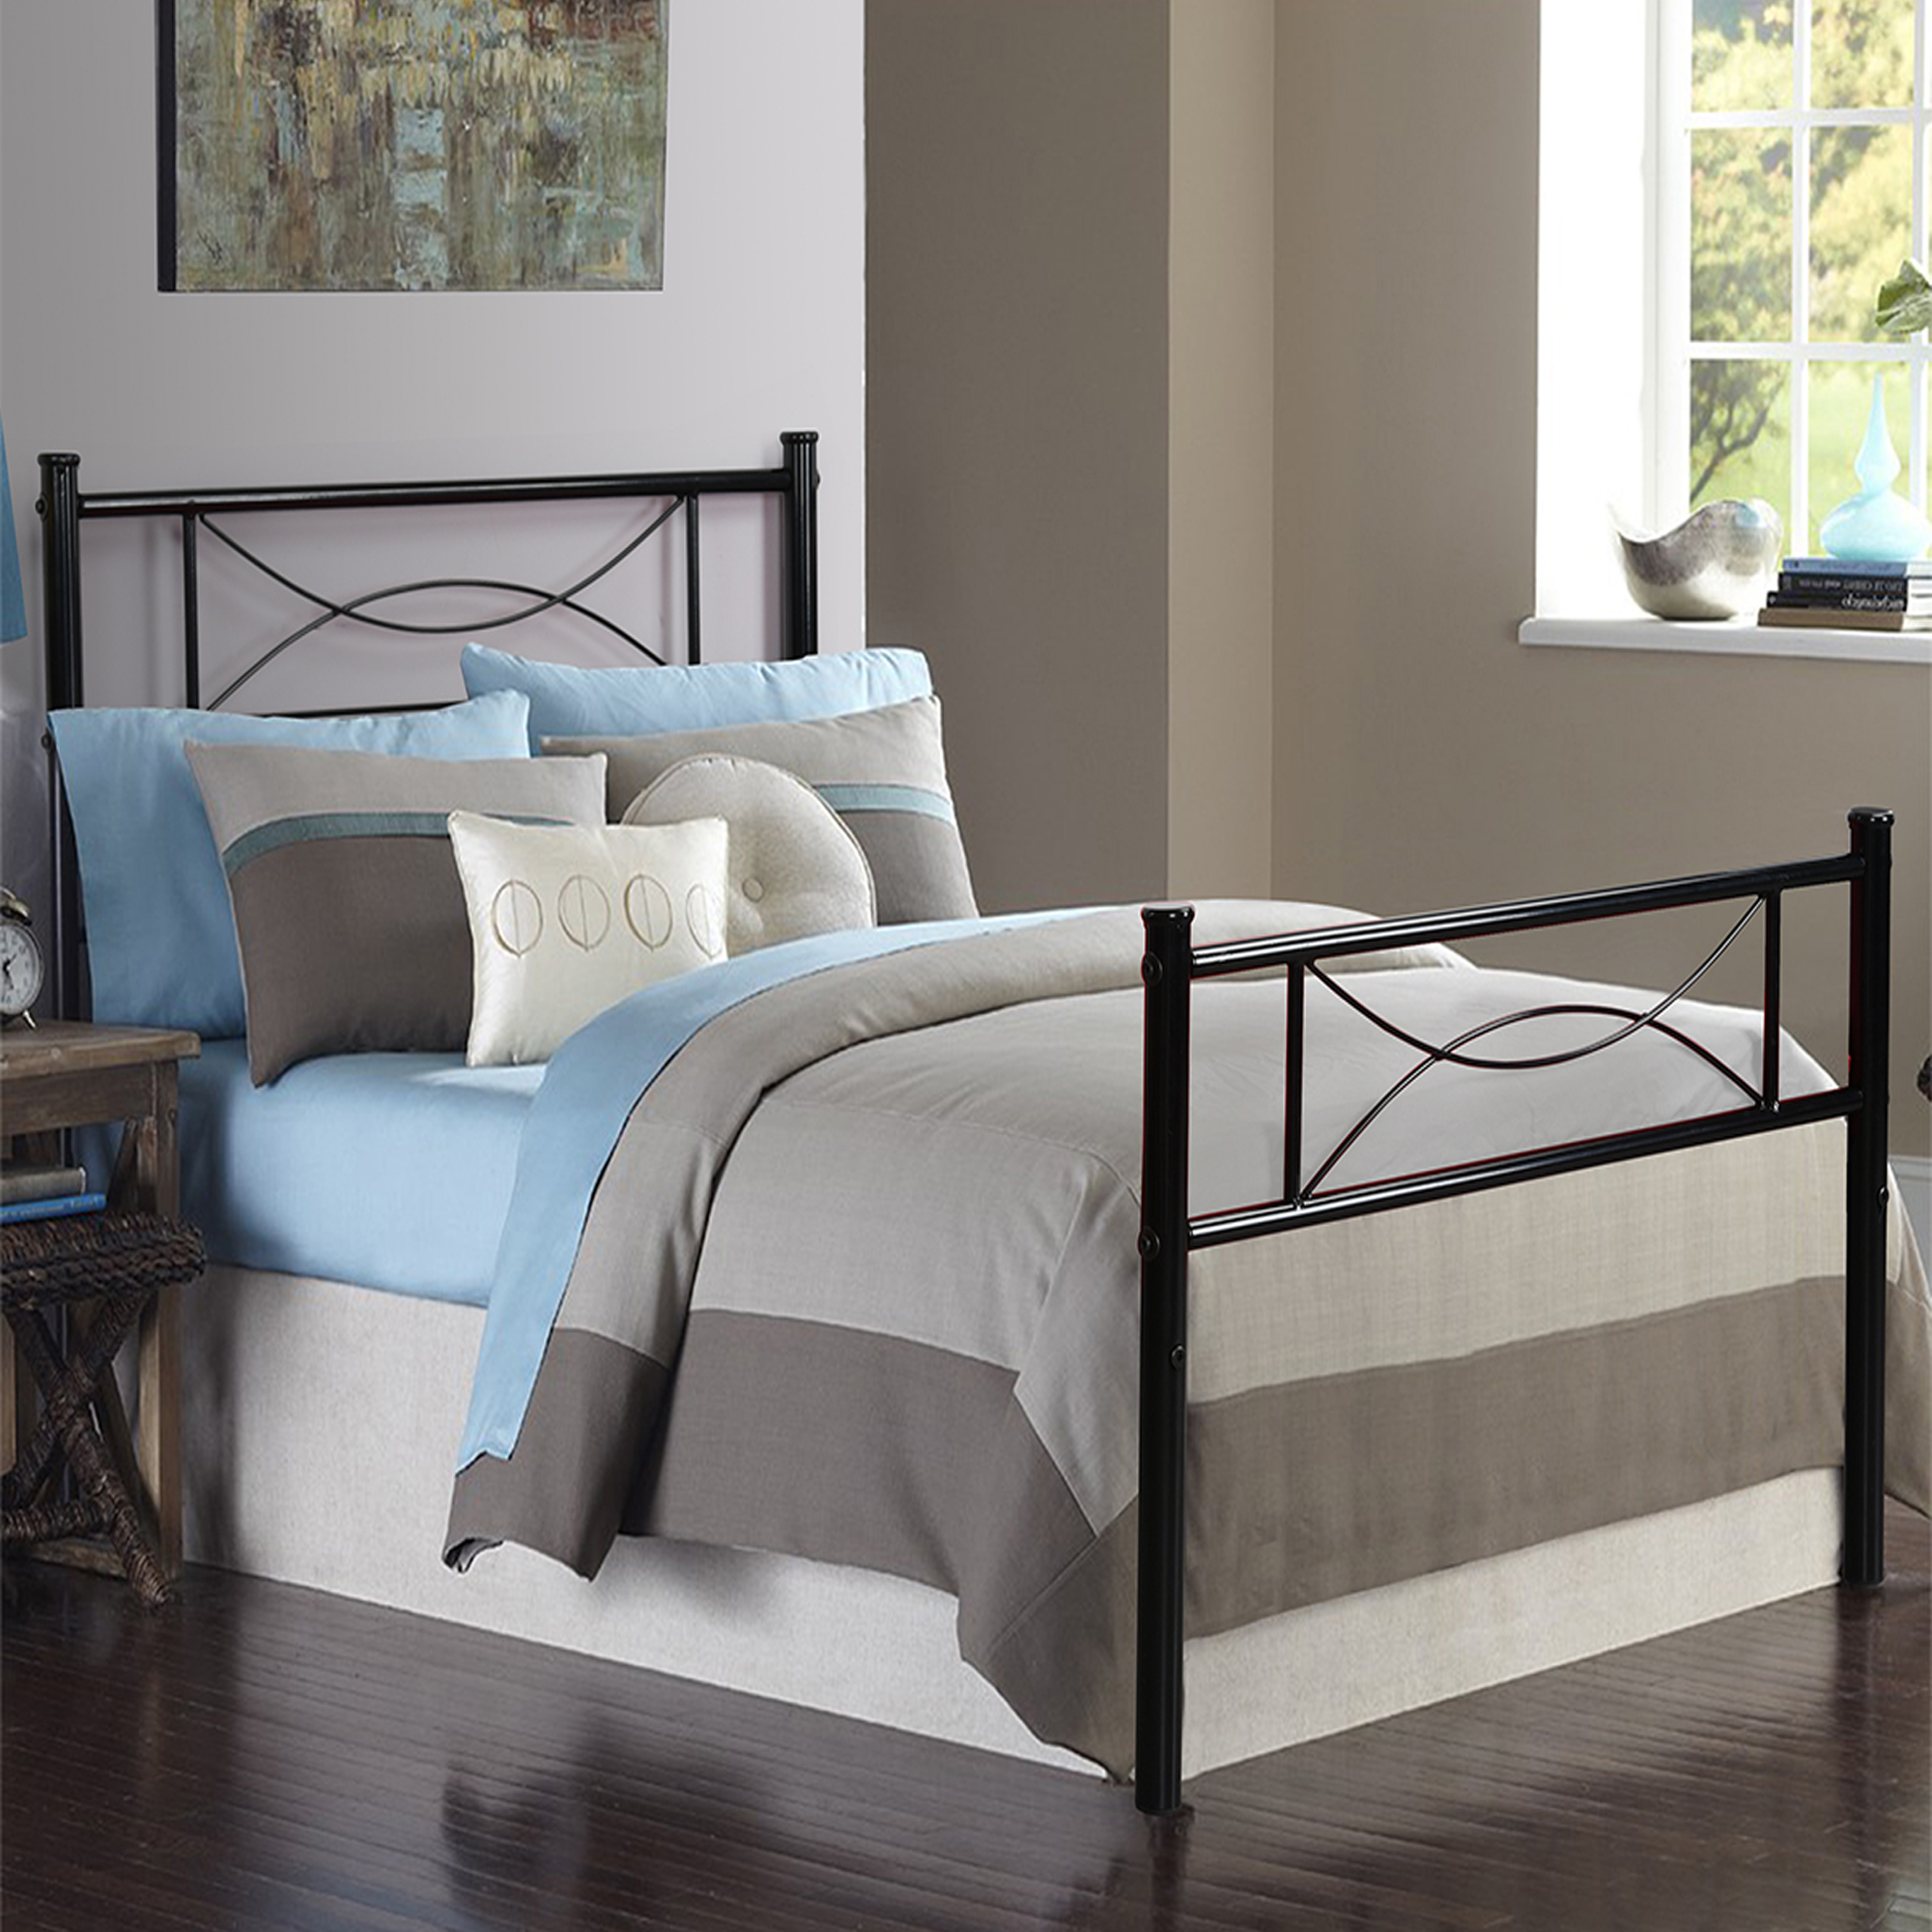 Furniture R Bedroom Metal Bed Frame, Twin Iron Platform Bed Frame